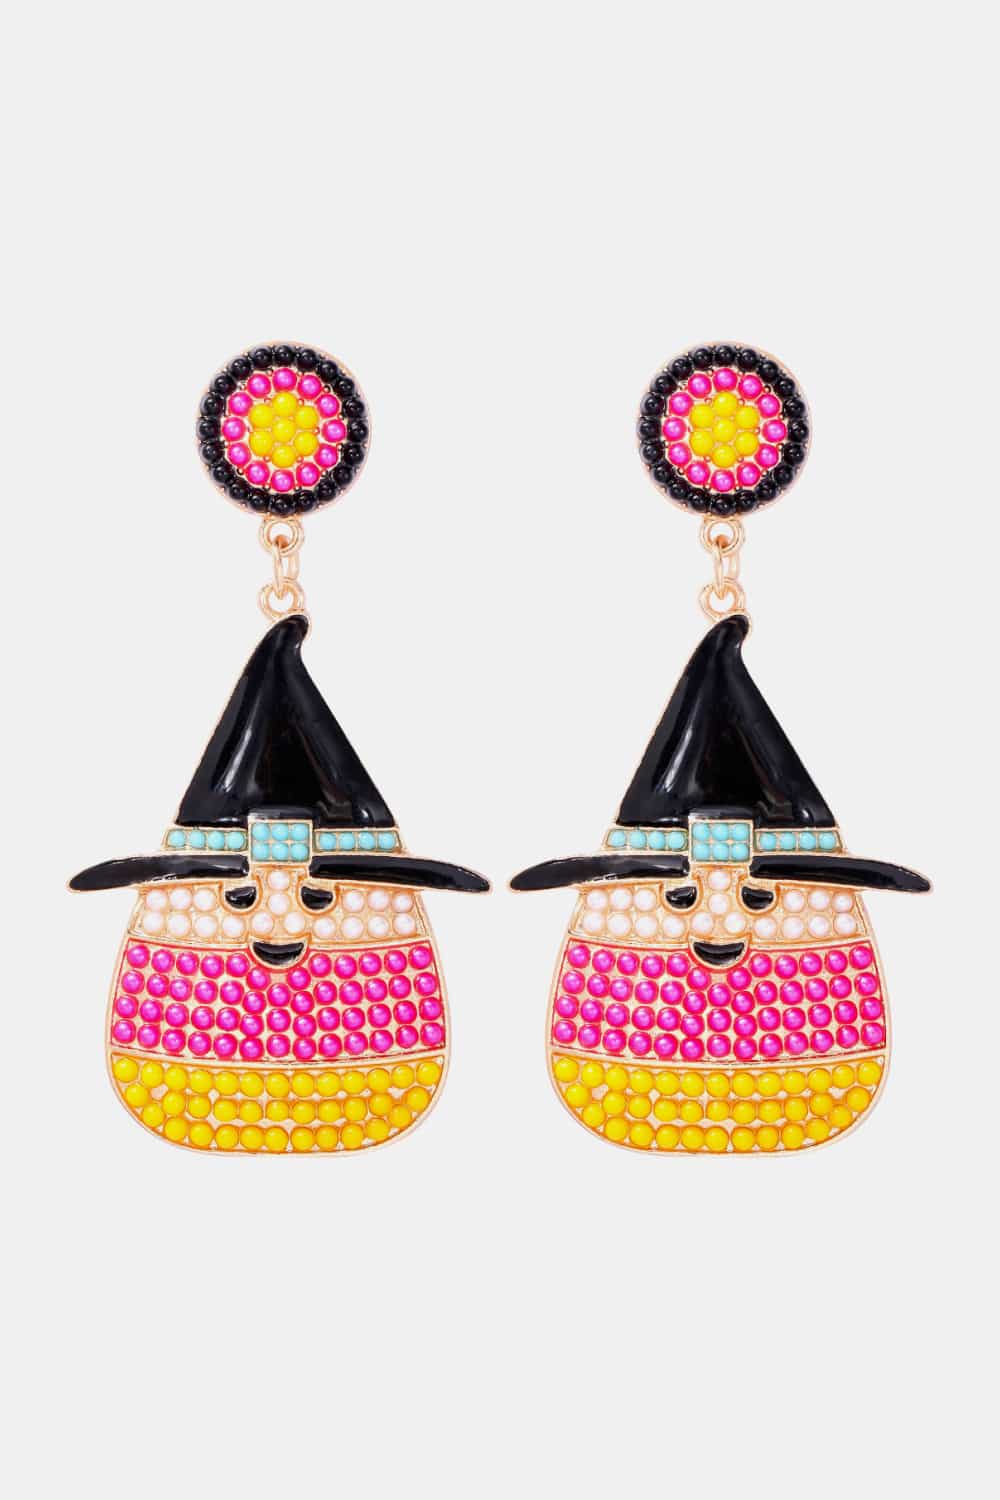 Witch’s Hat Shape Synthetic Pearl Dangle Earrings - Pink / One Size - Women’s Jewelry - Earrings - 8 - 2024